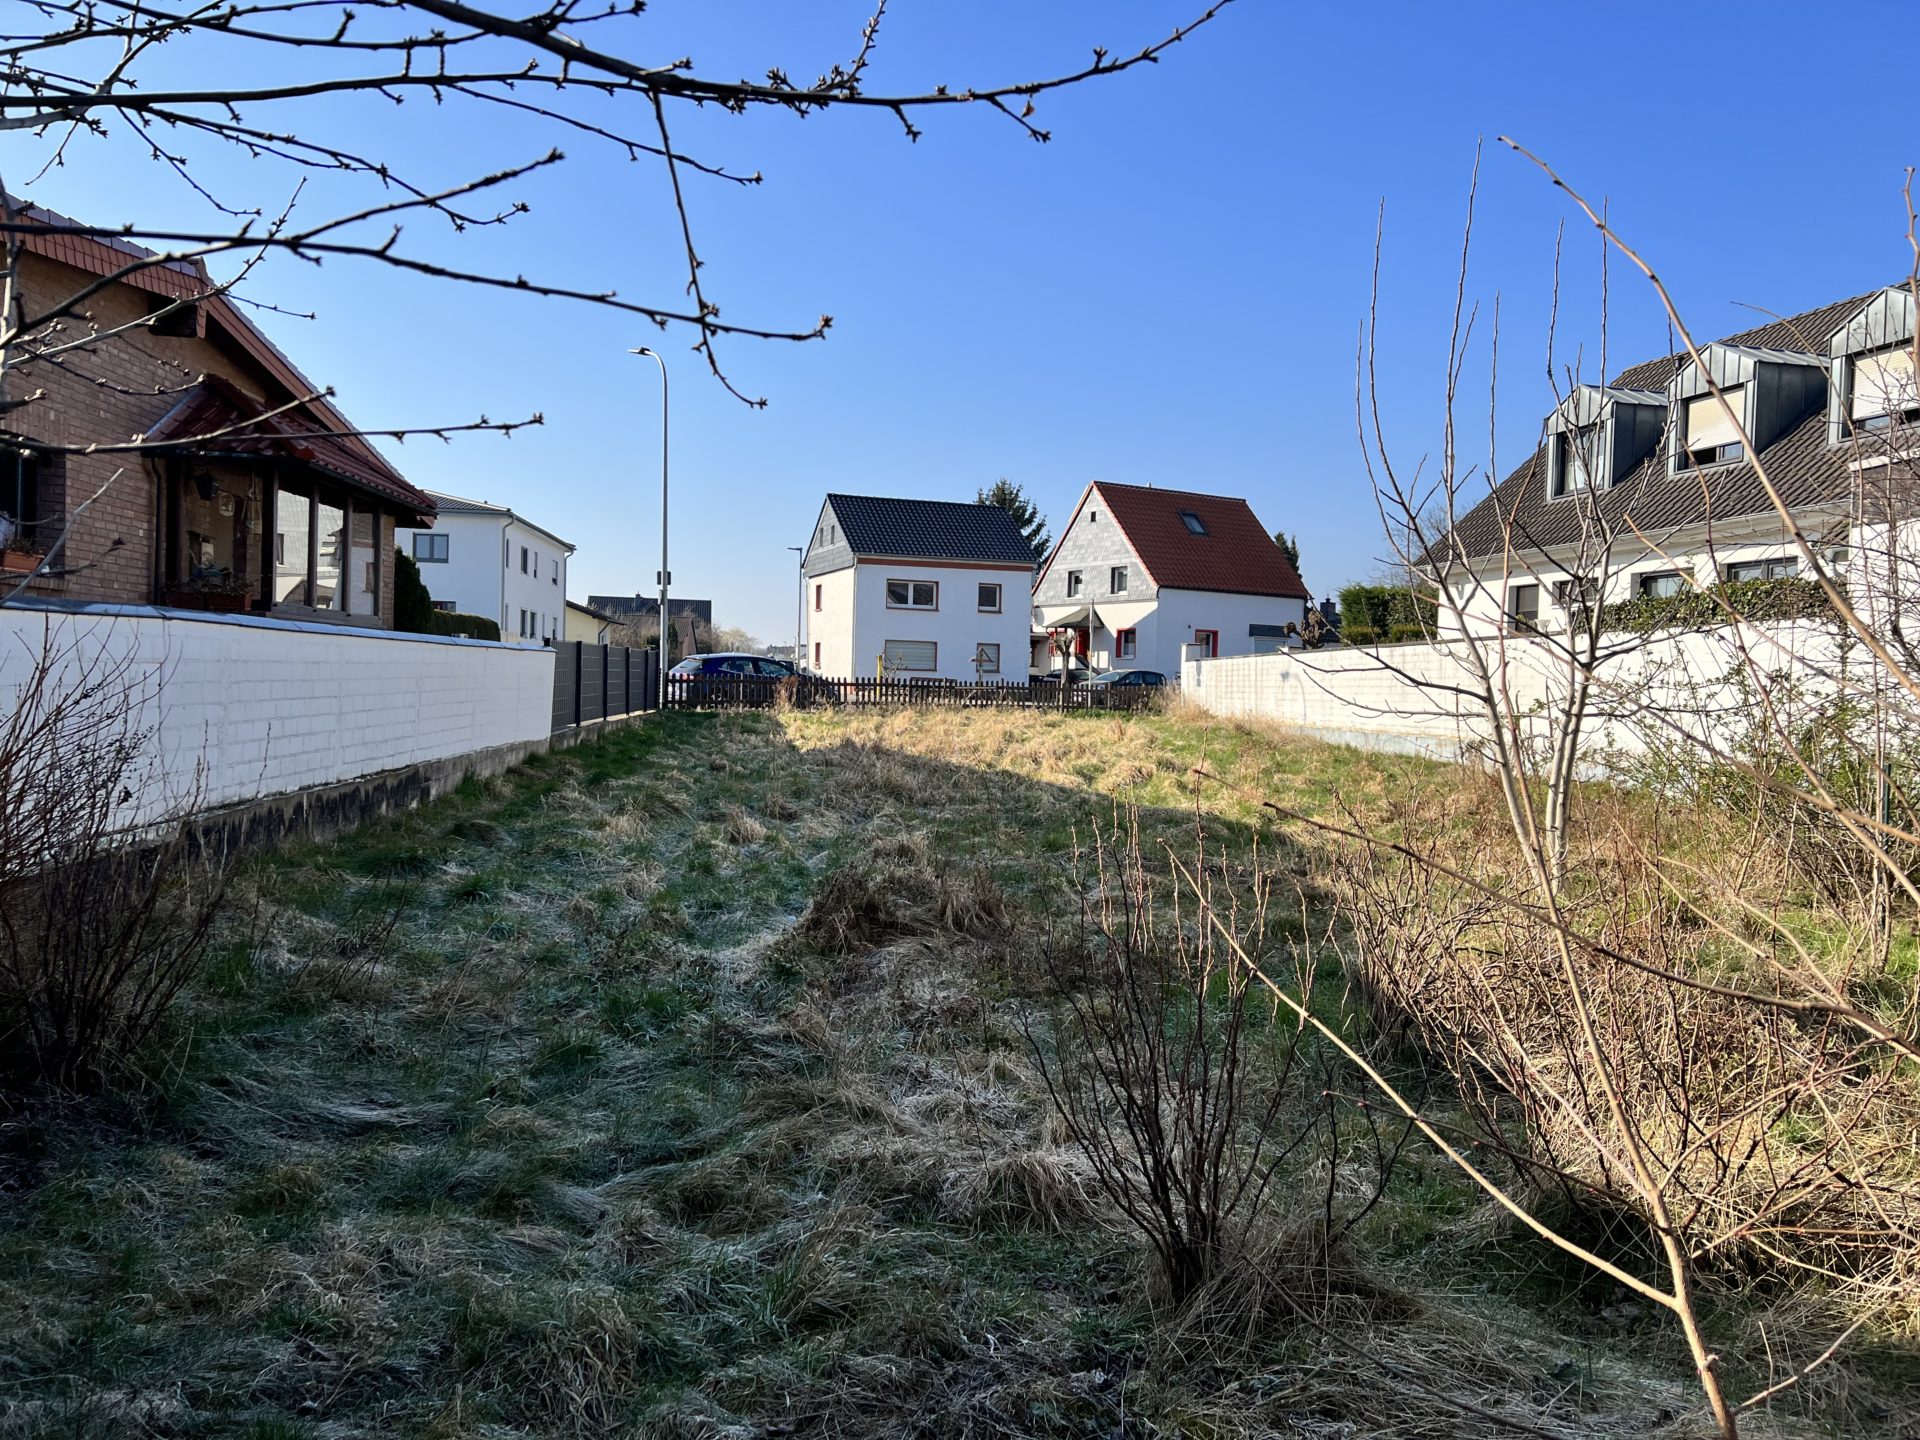 Odendorf: Baugrundstück in ruhiger Ortsrandlage von Swisttal zu verkaufen